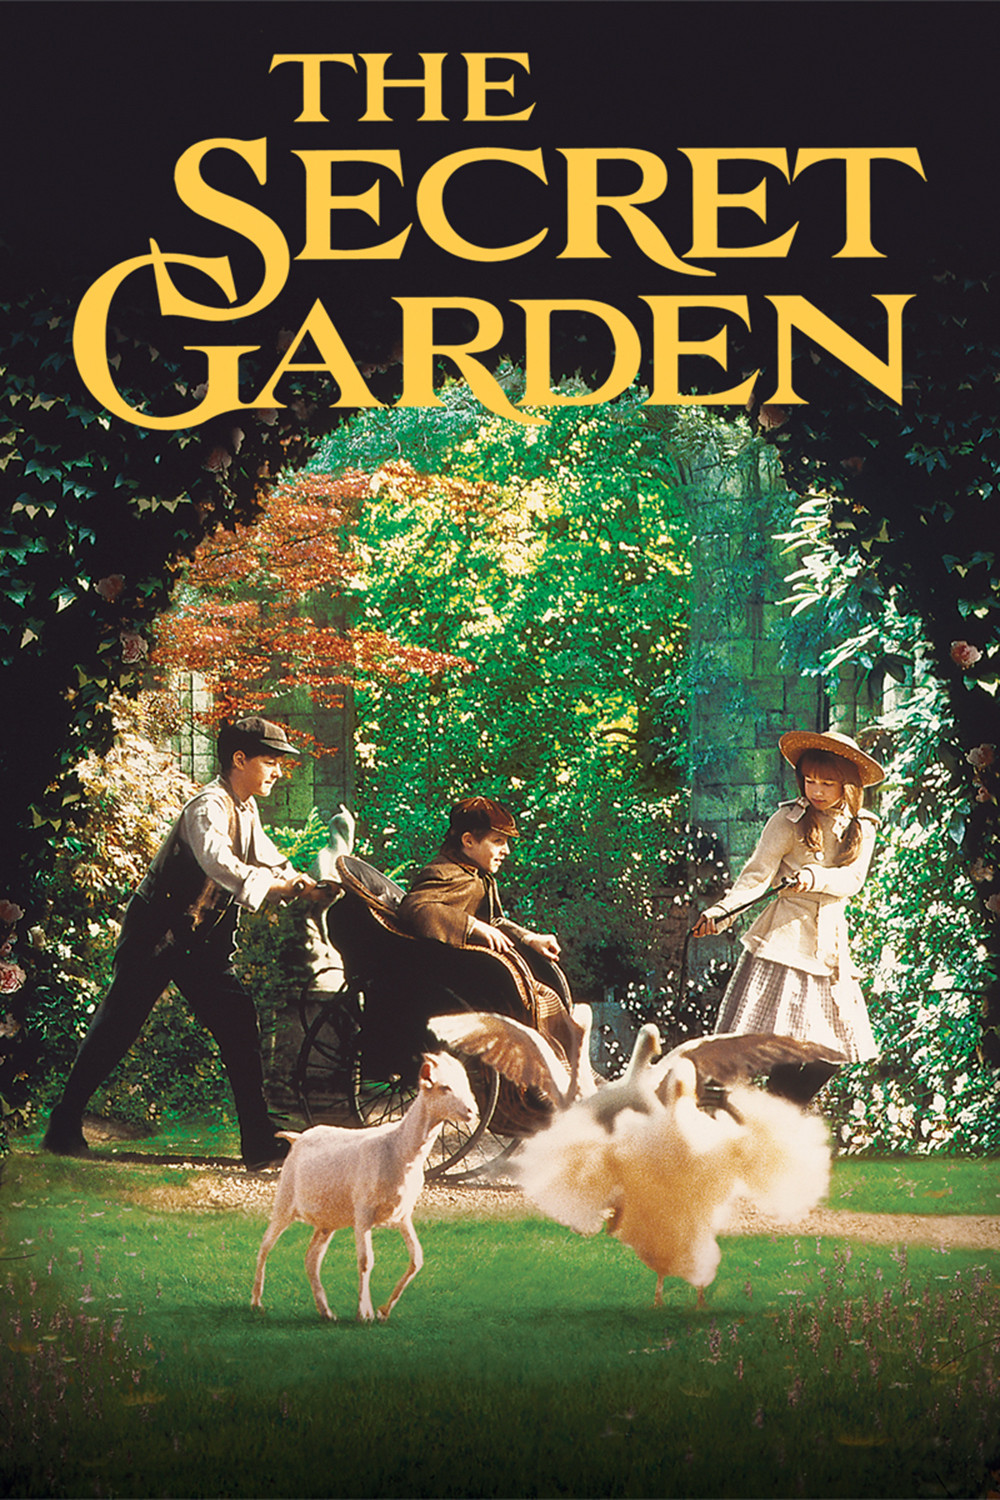 The Secret Garden 1993 Reviews Metacritic